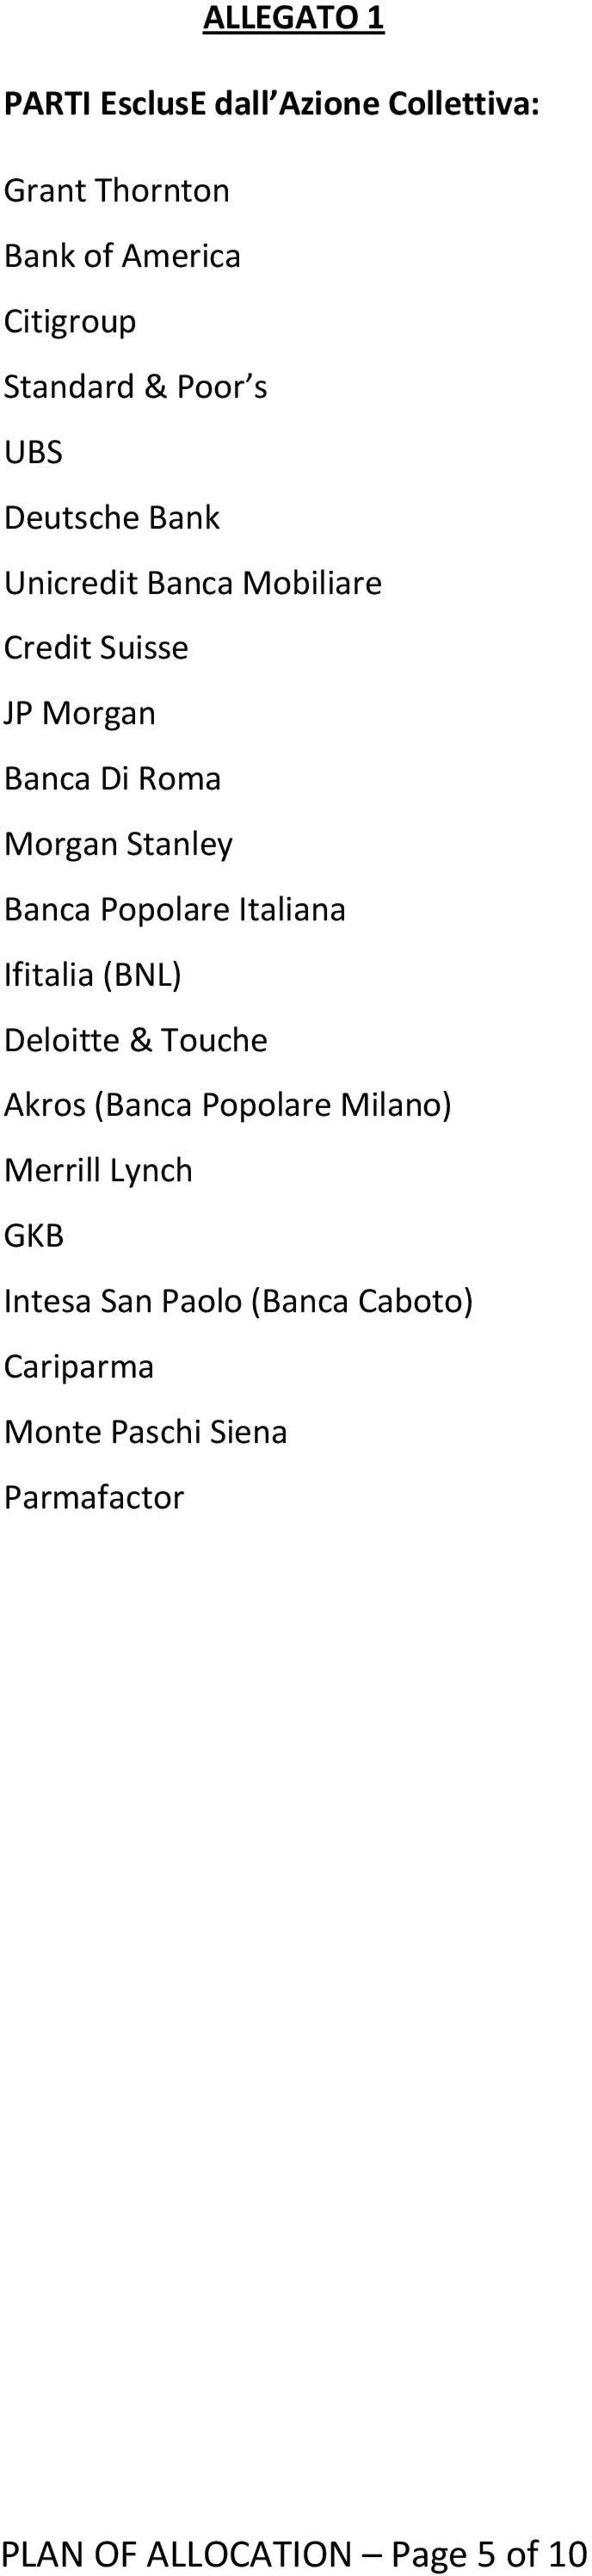 Banca Popolare Italiana Ifitalia (BNL) Deloitte & Touche Akros (Banca Popolare Milano) Merrill Lynch